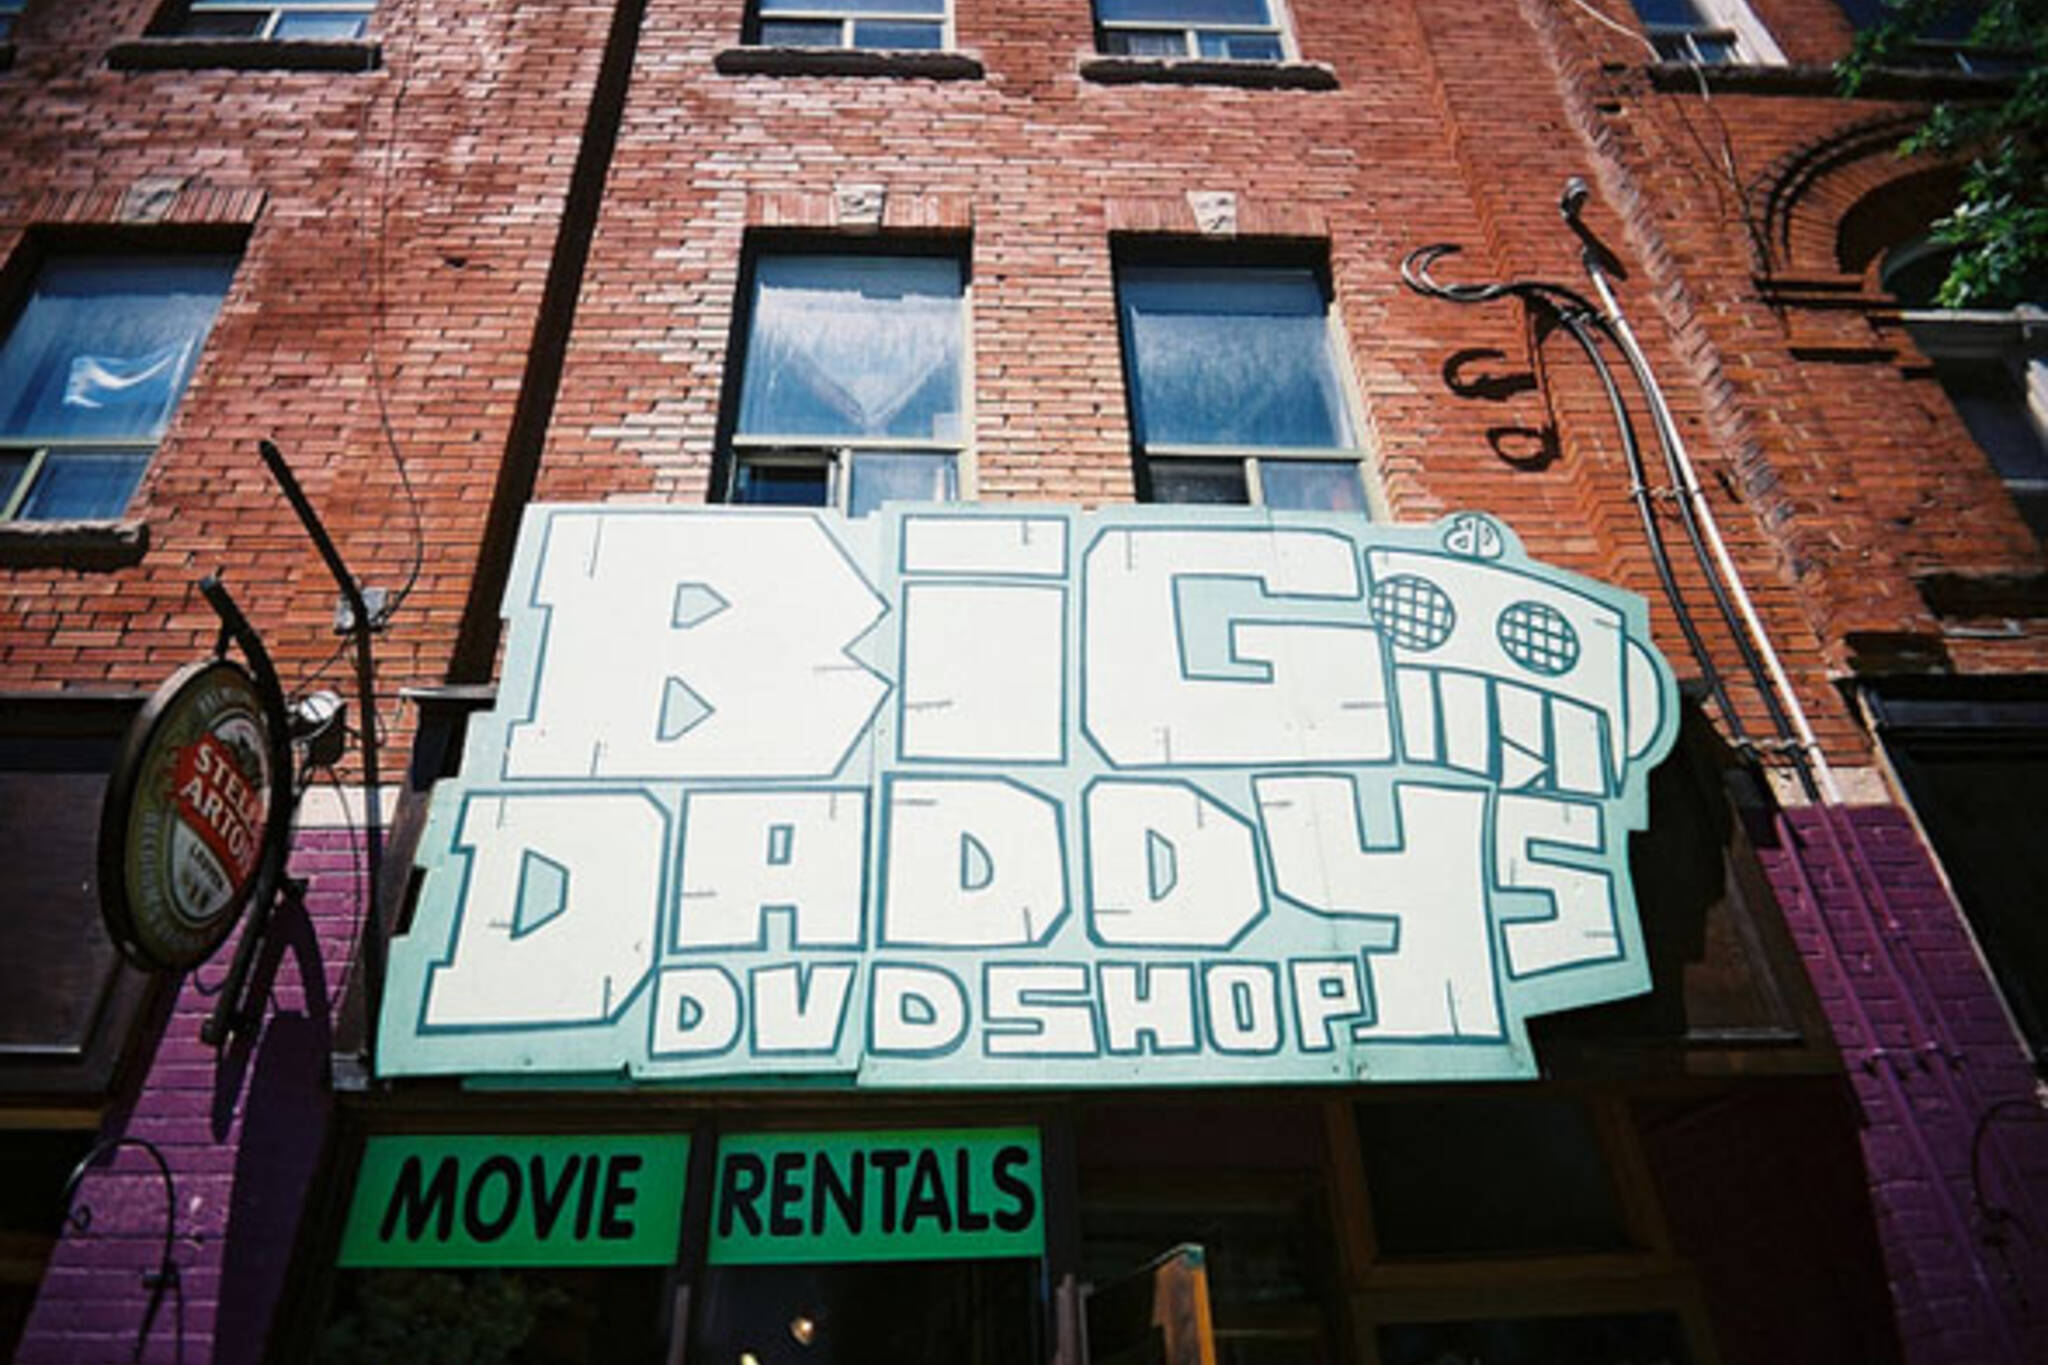 big daddys dvd shop